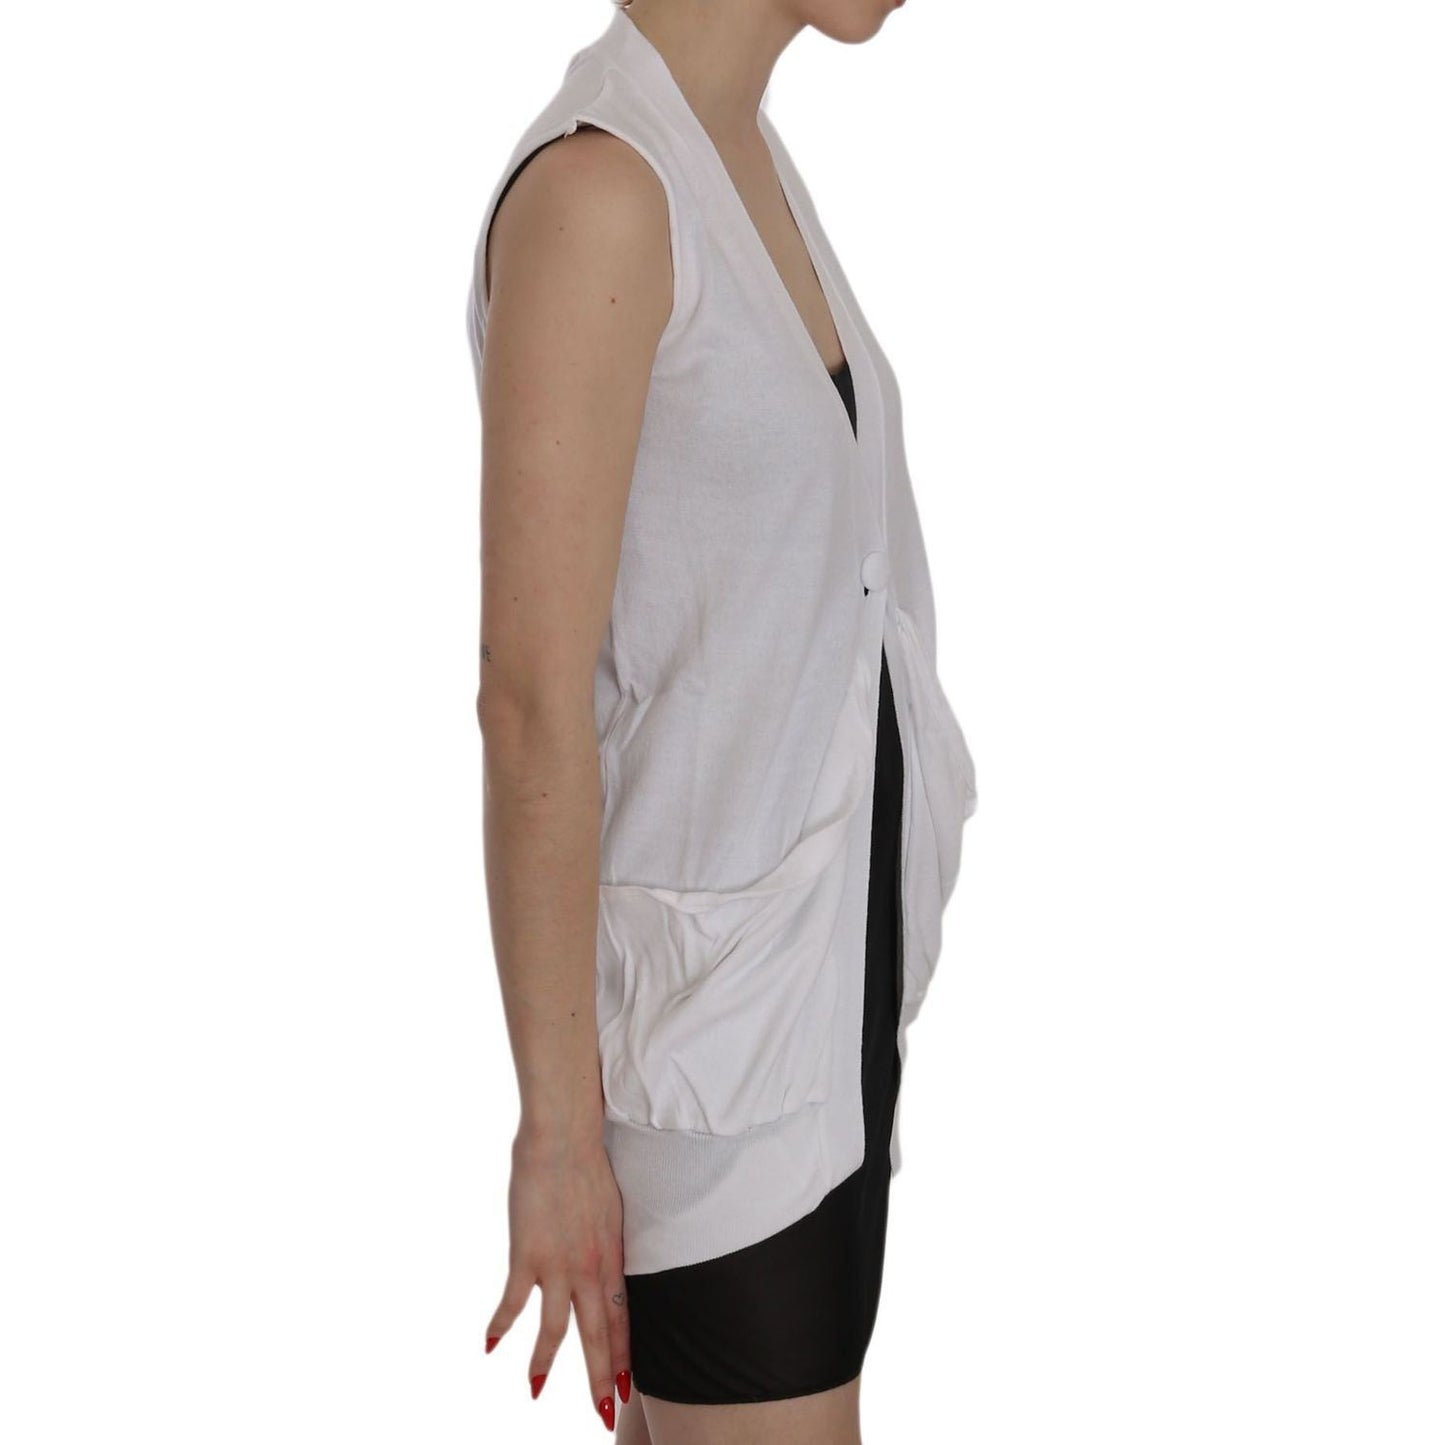 PINK MEMORIES Elegant Sleeveless Cotton Vest in Pristine White white-100-cotton-sleeveless-cardigan-top-vest IMG_1916-05b7e7d5-910.jpg